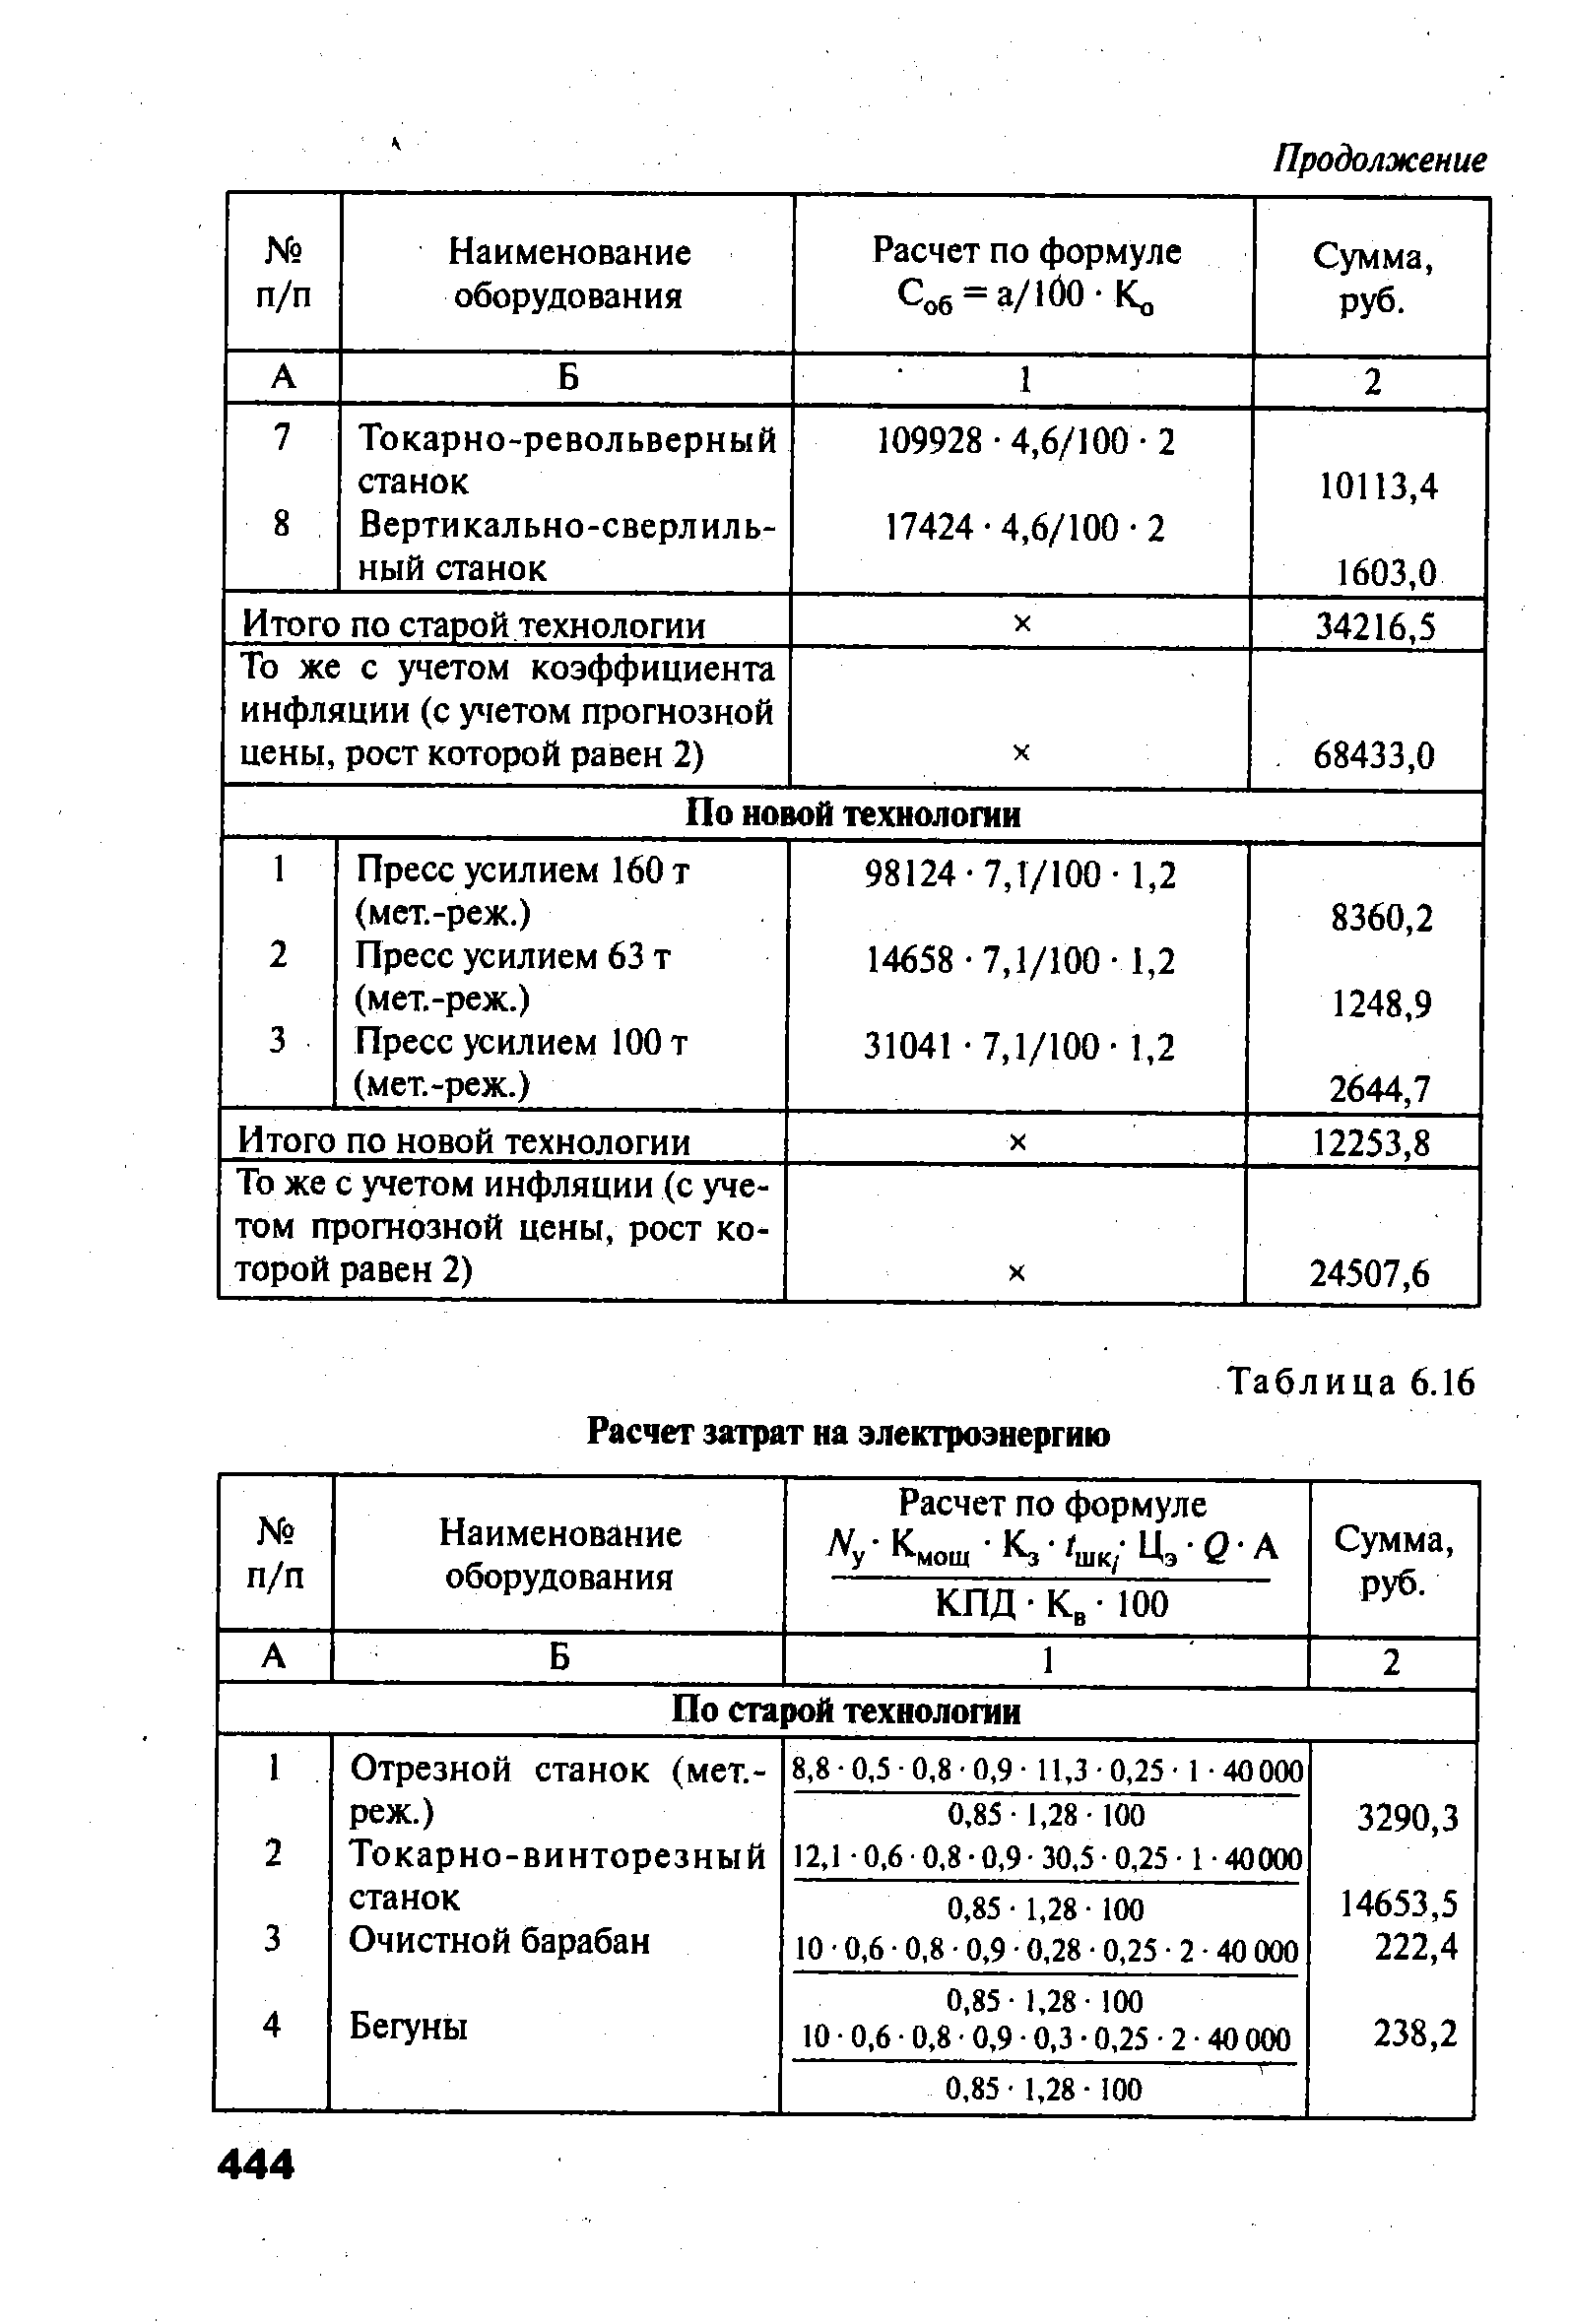 Таблица 6.16 Расчет затрат на электроэнергию
